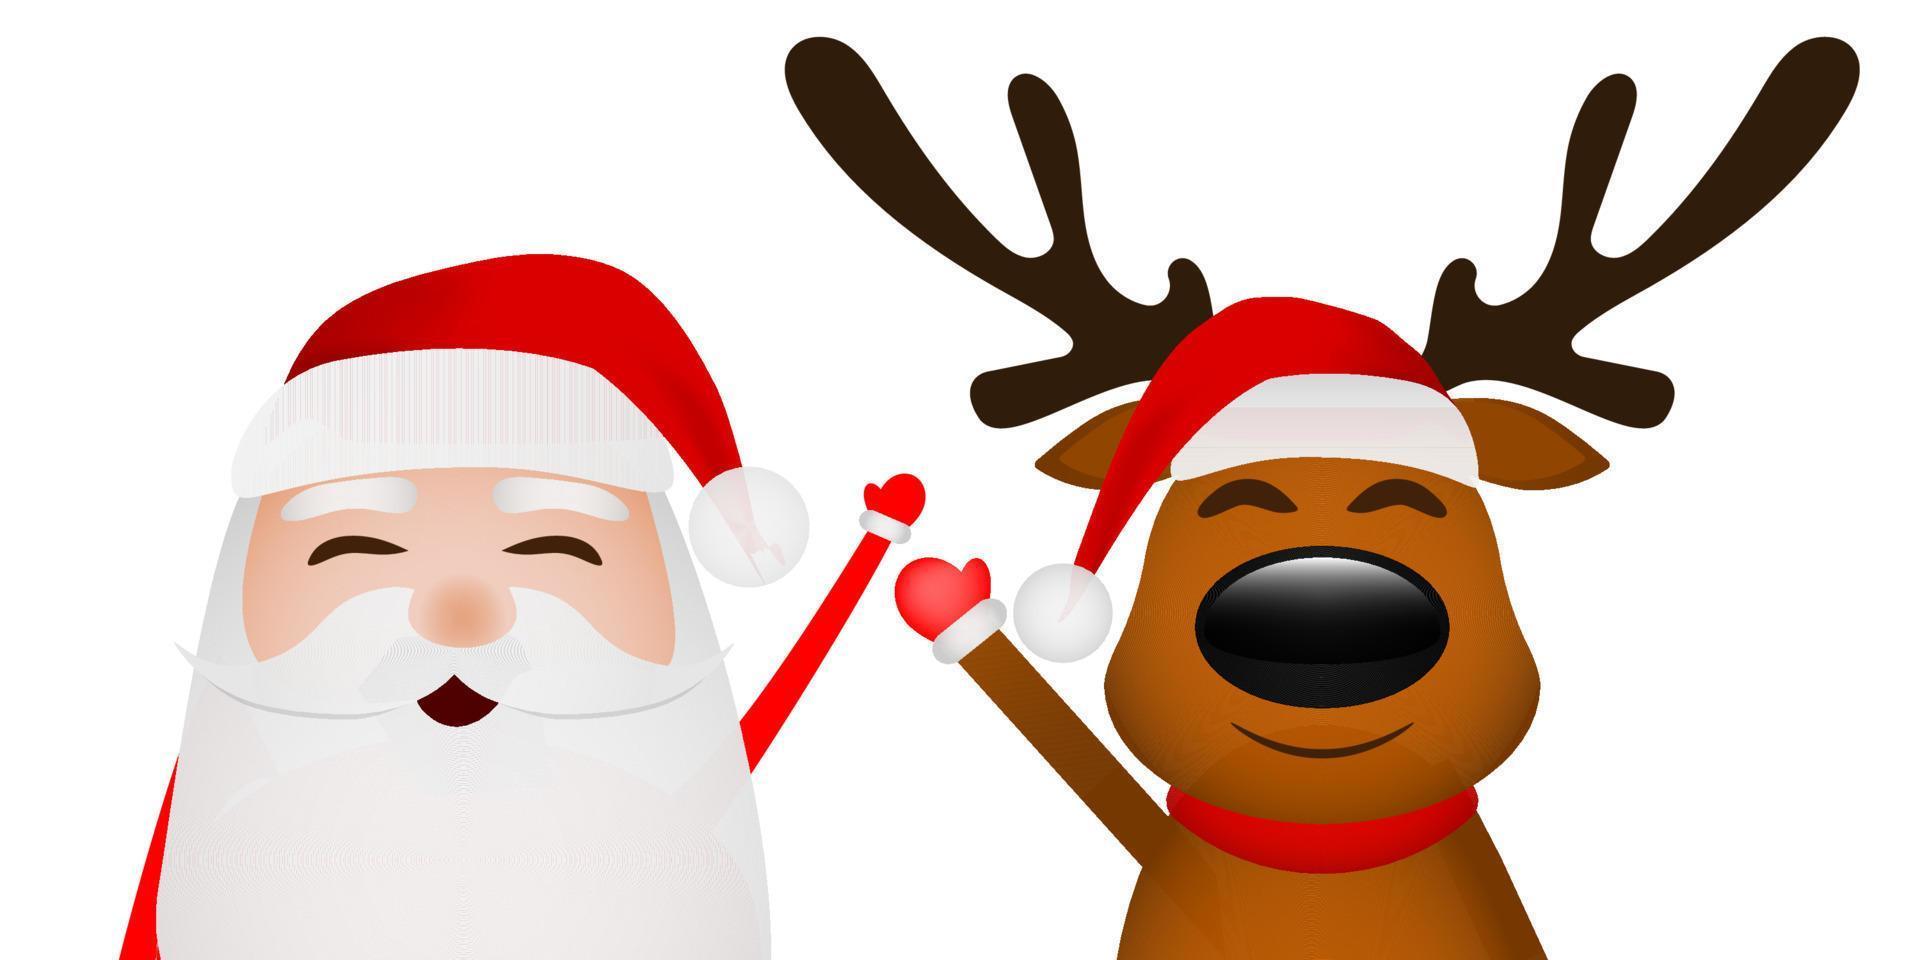 cartone animato divertente Santa Claus e renna agitando mani isolato su bianca vettore